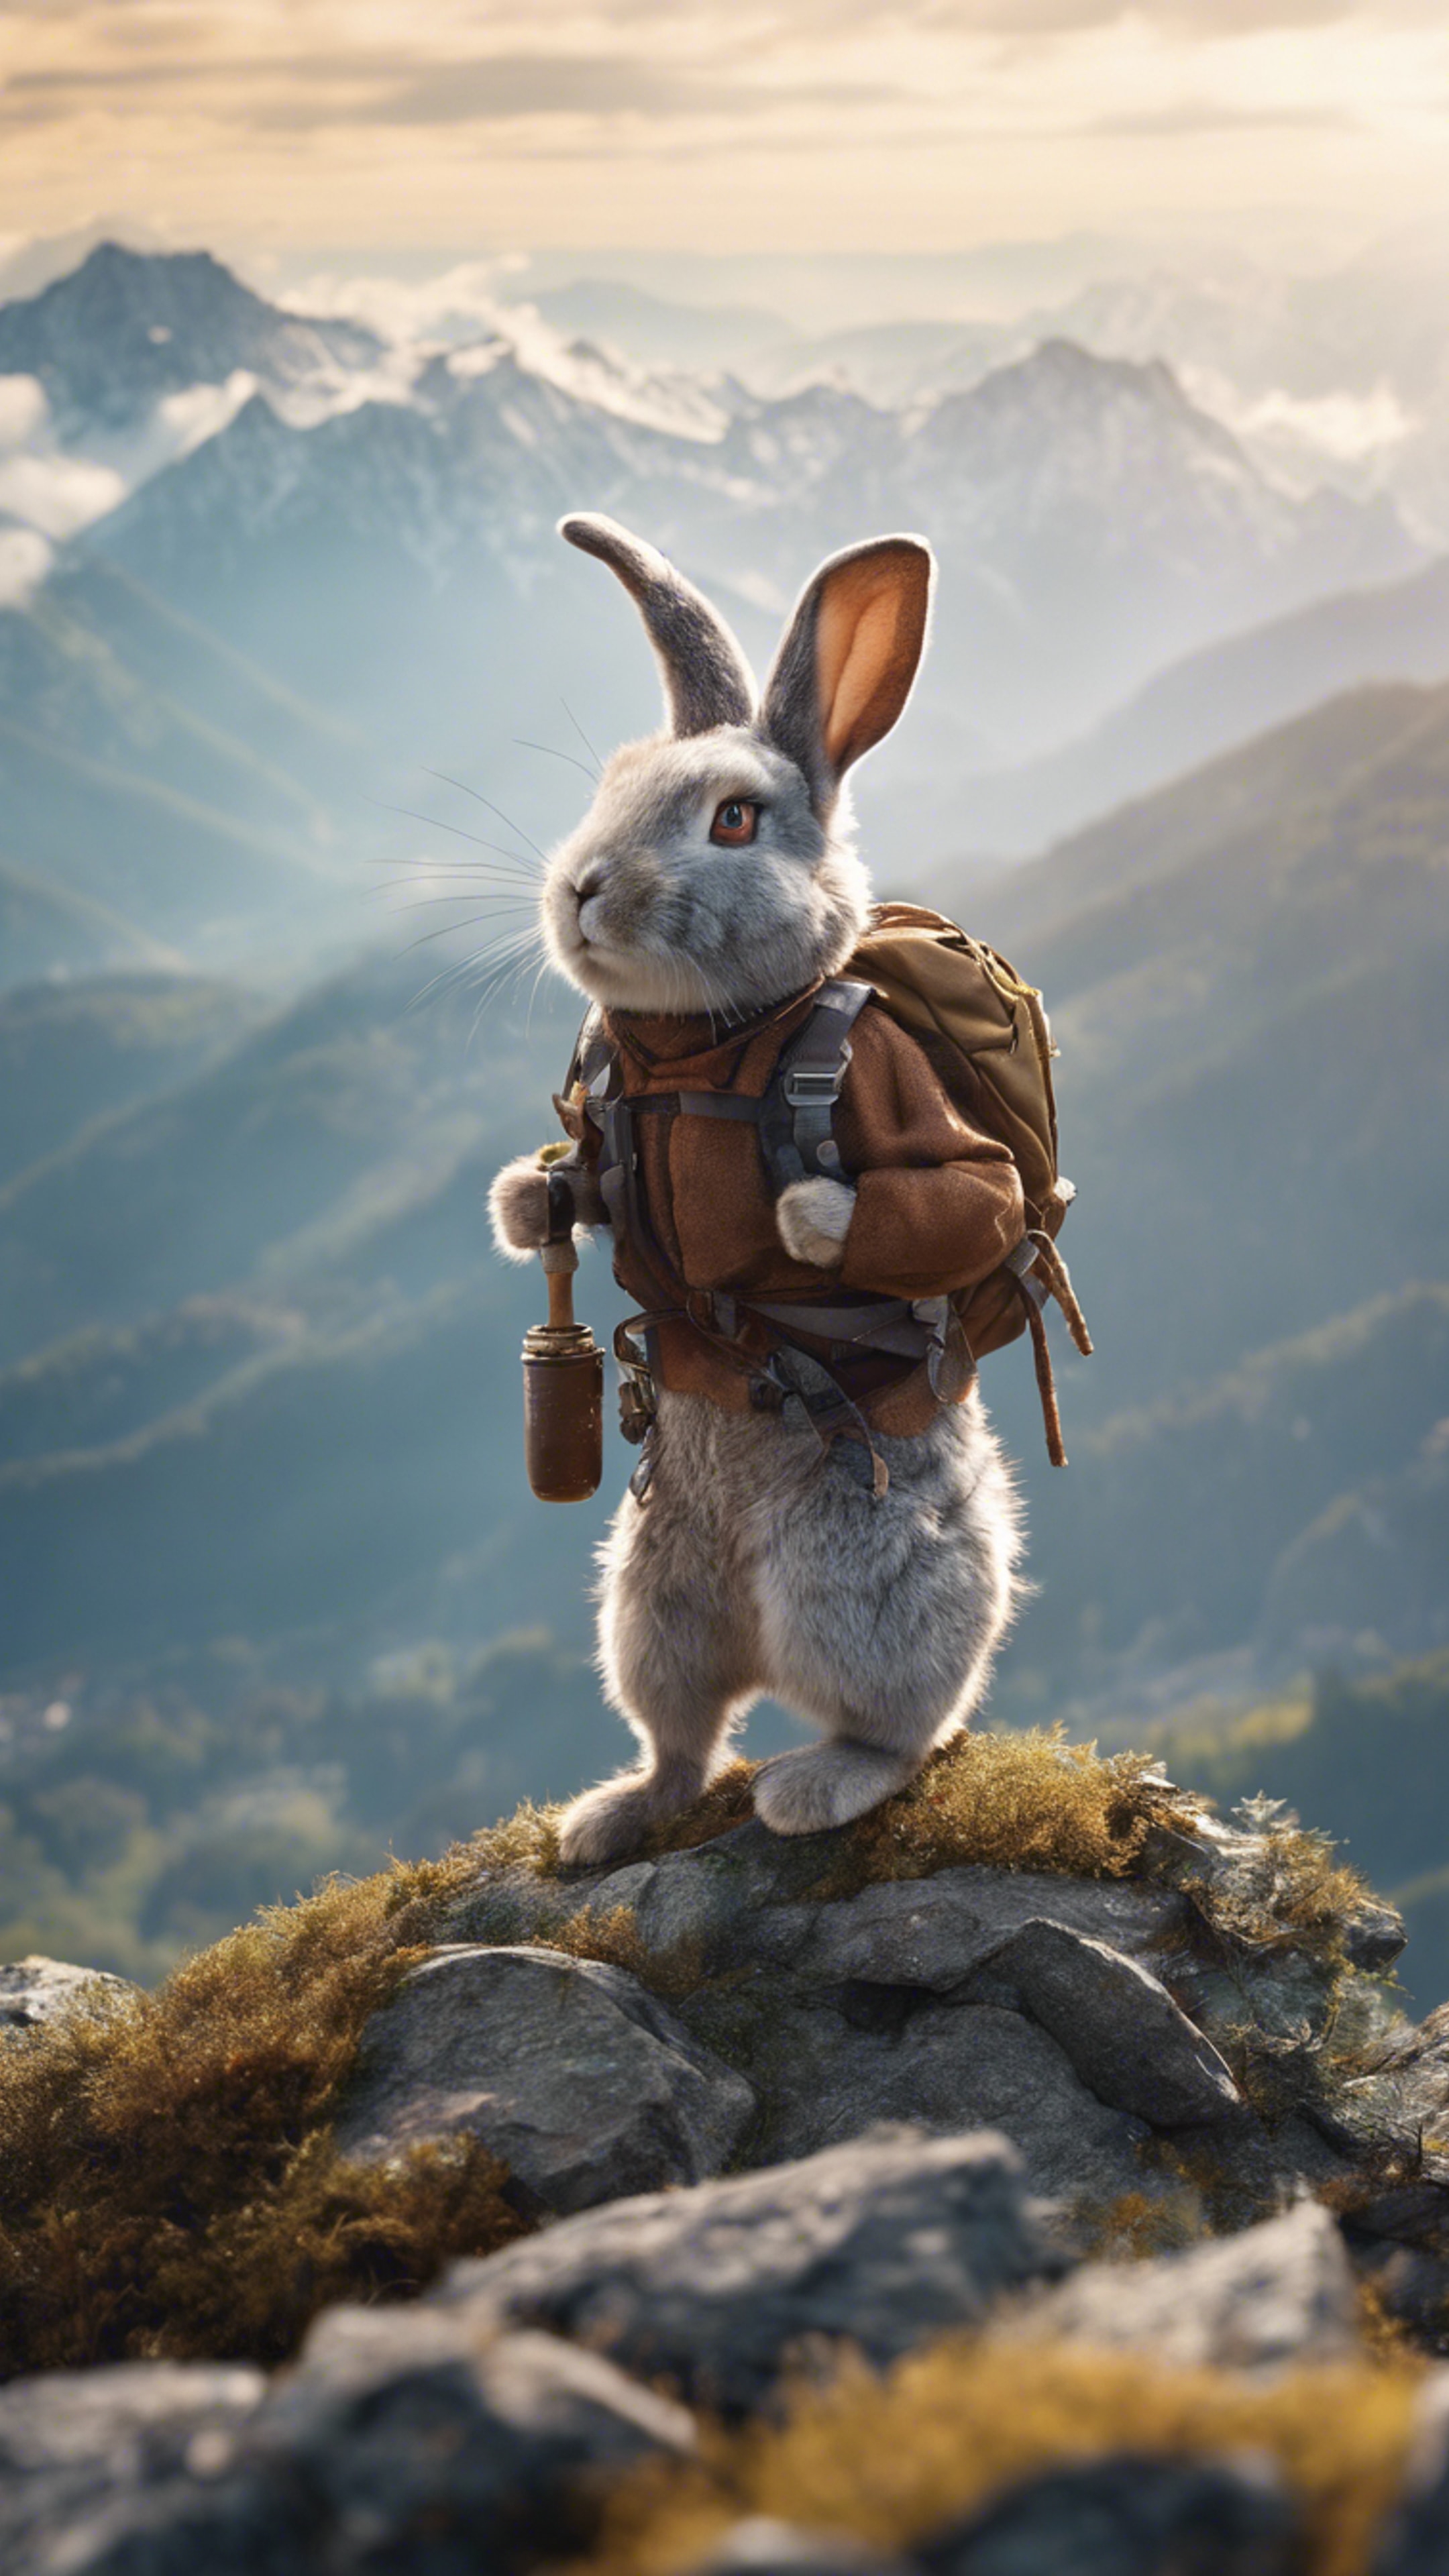 A Rabbit mountaineer conquering a treacherous peak. کاغذ دیواری[faadaab6eec04e17a877]